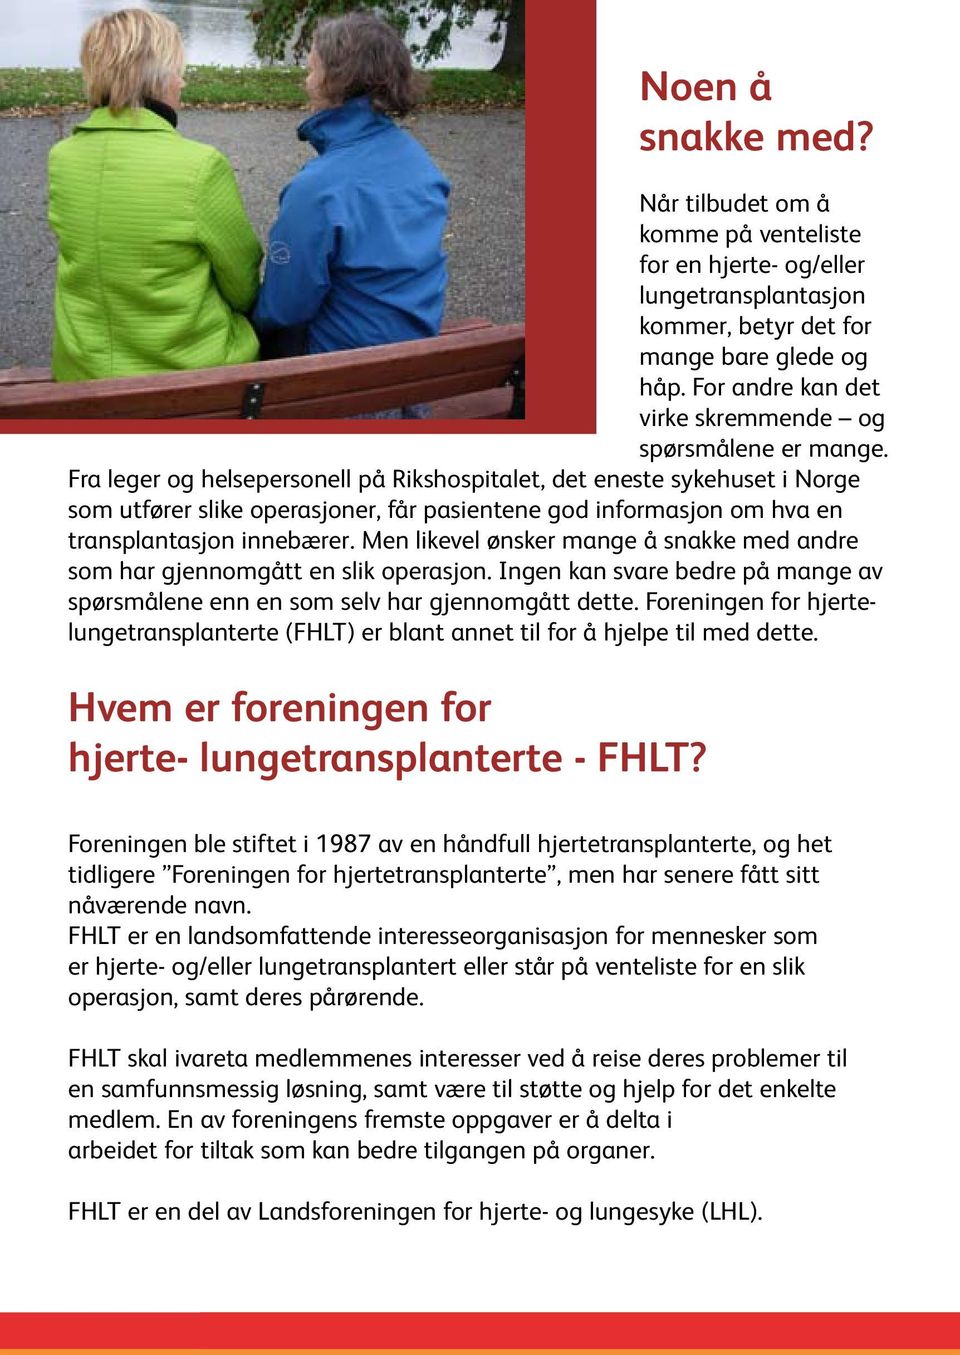 Fra leger og helsepersonell på Rikshospitalet, det eneste sykehuset i Norge som utfører slike operasjoner, får pasientene god informasjon om hva en transplantasjon innebærer.